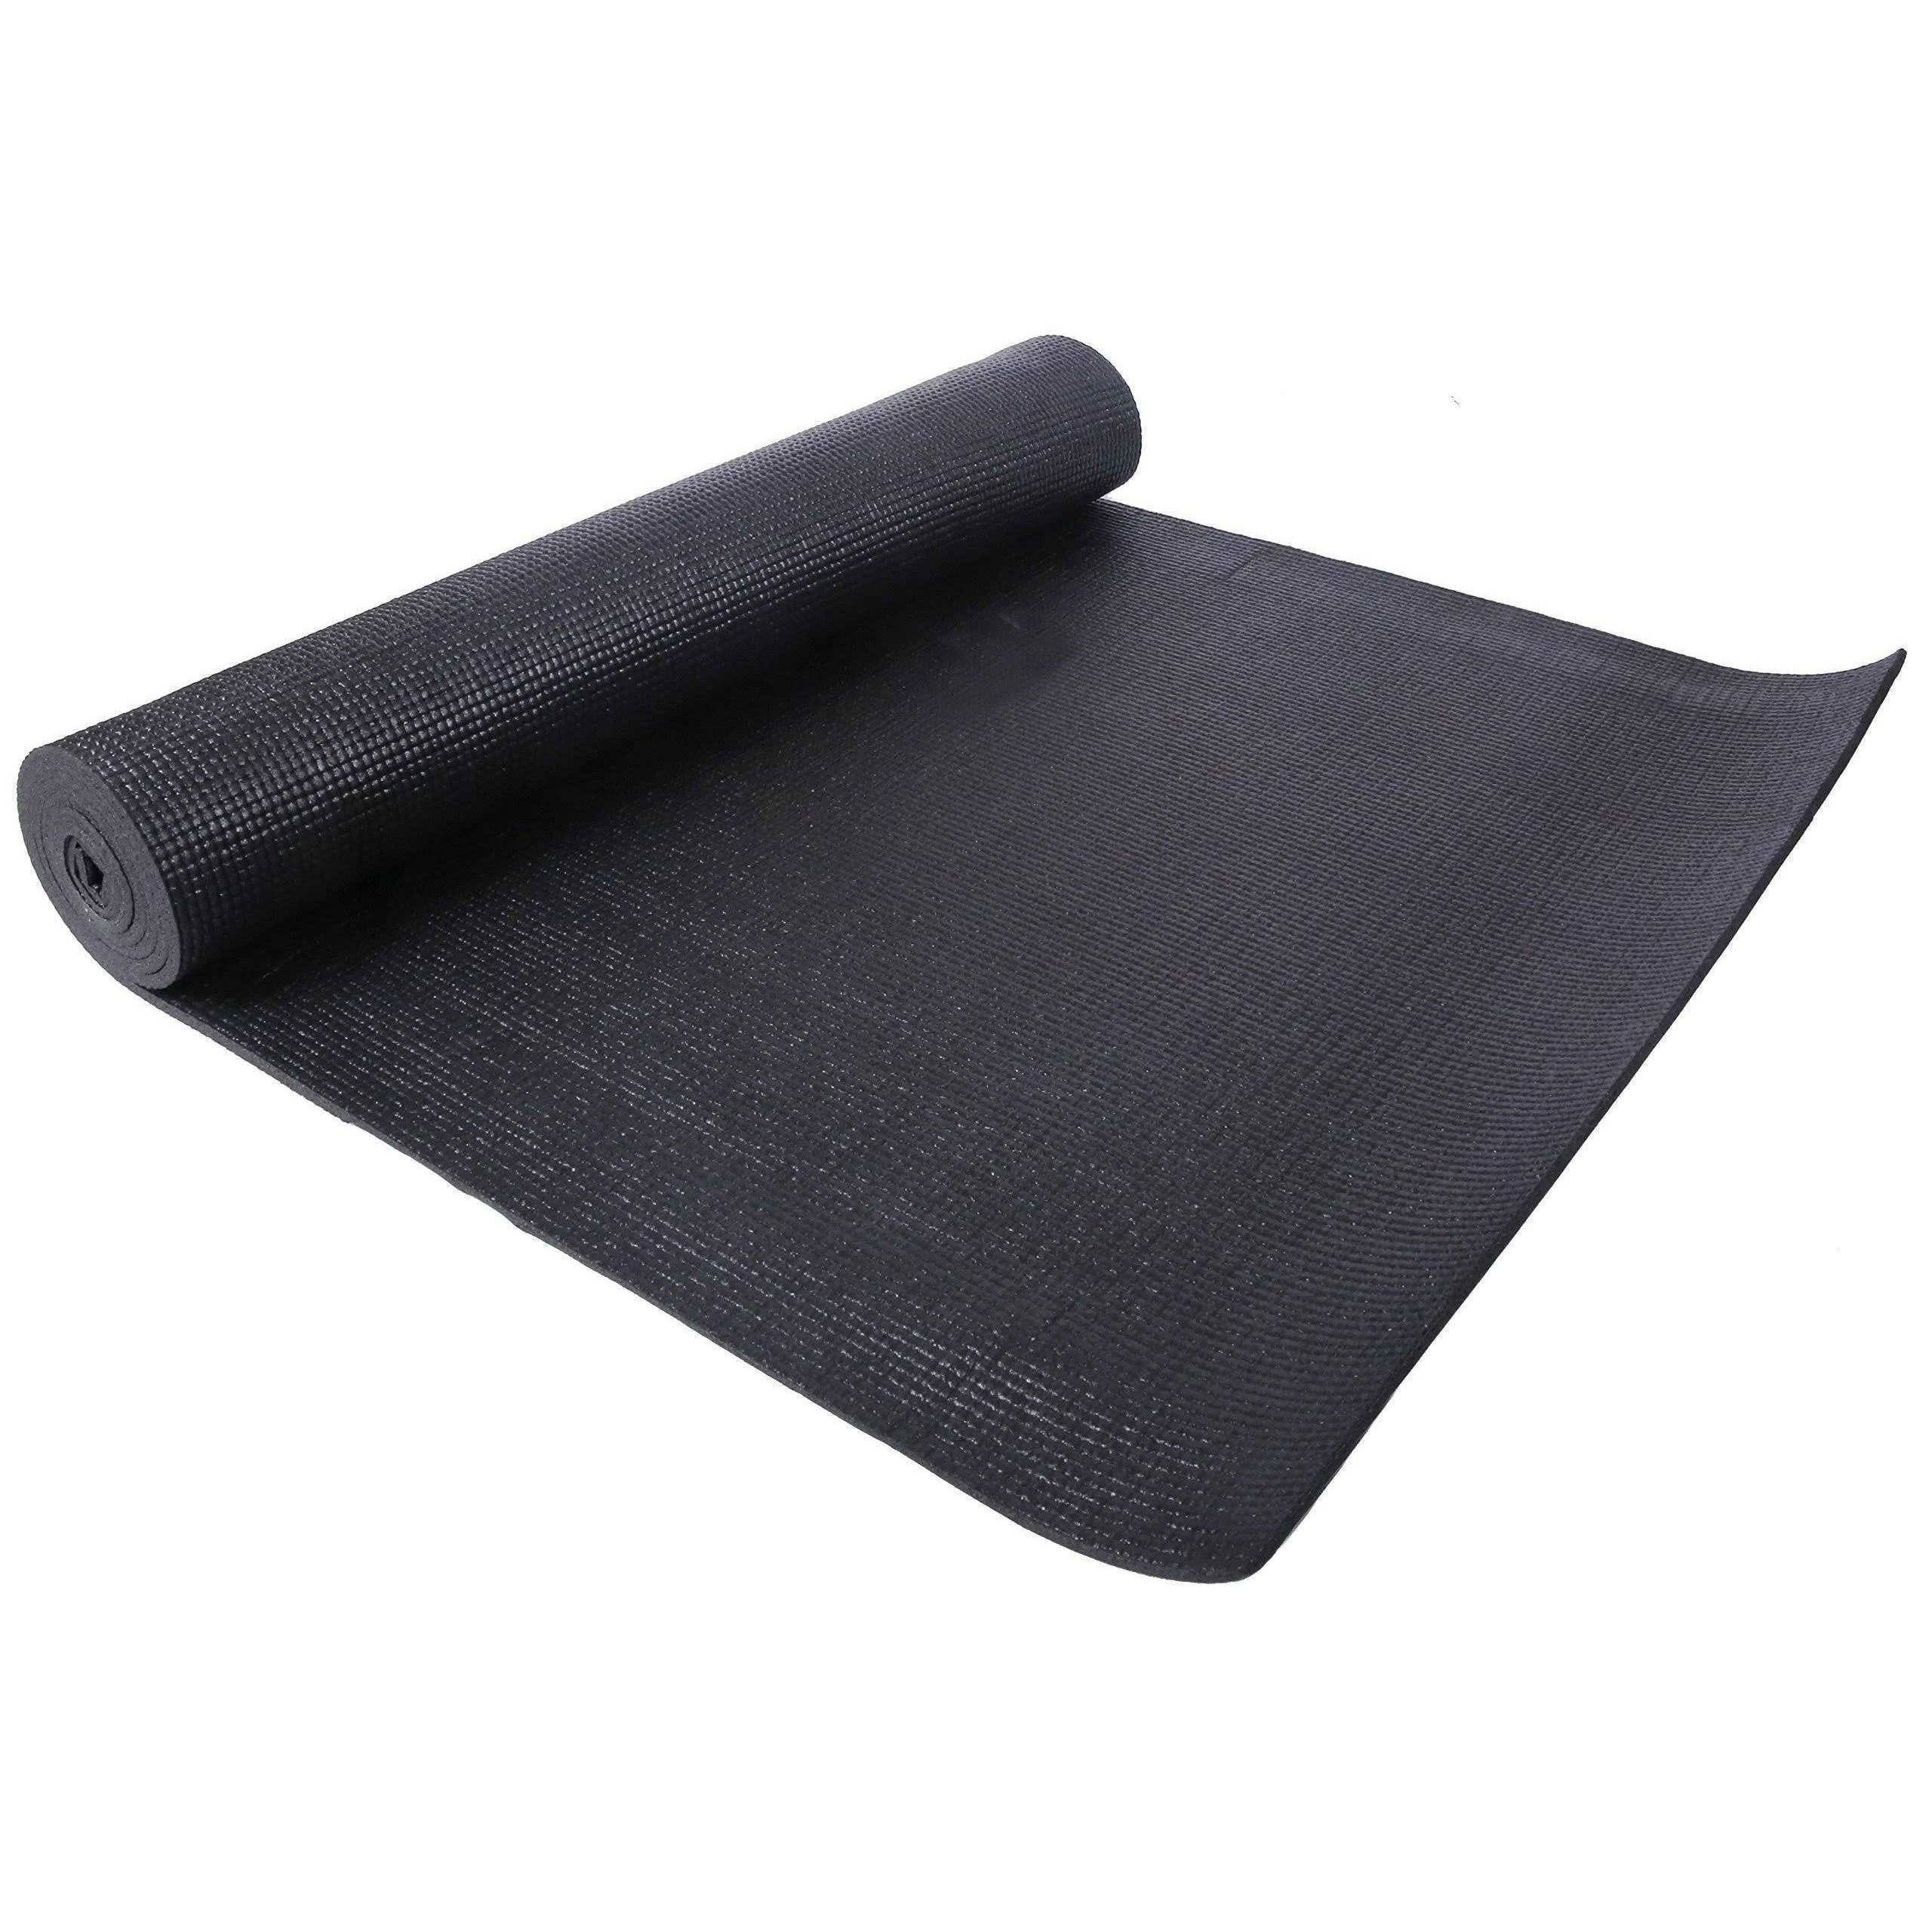 Wallniture Core 4 Sectional Yoga Mat Holder Wall Mount Foam Roller